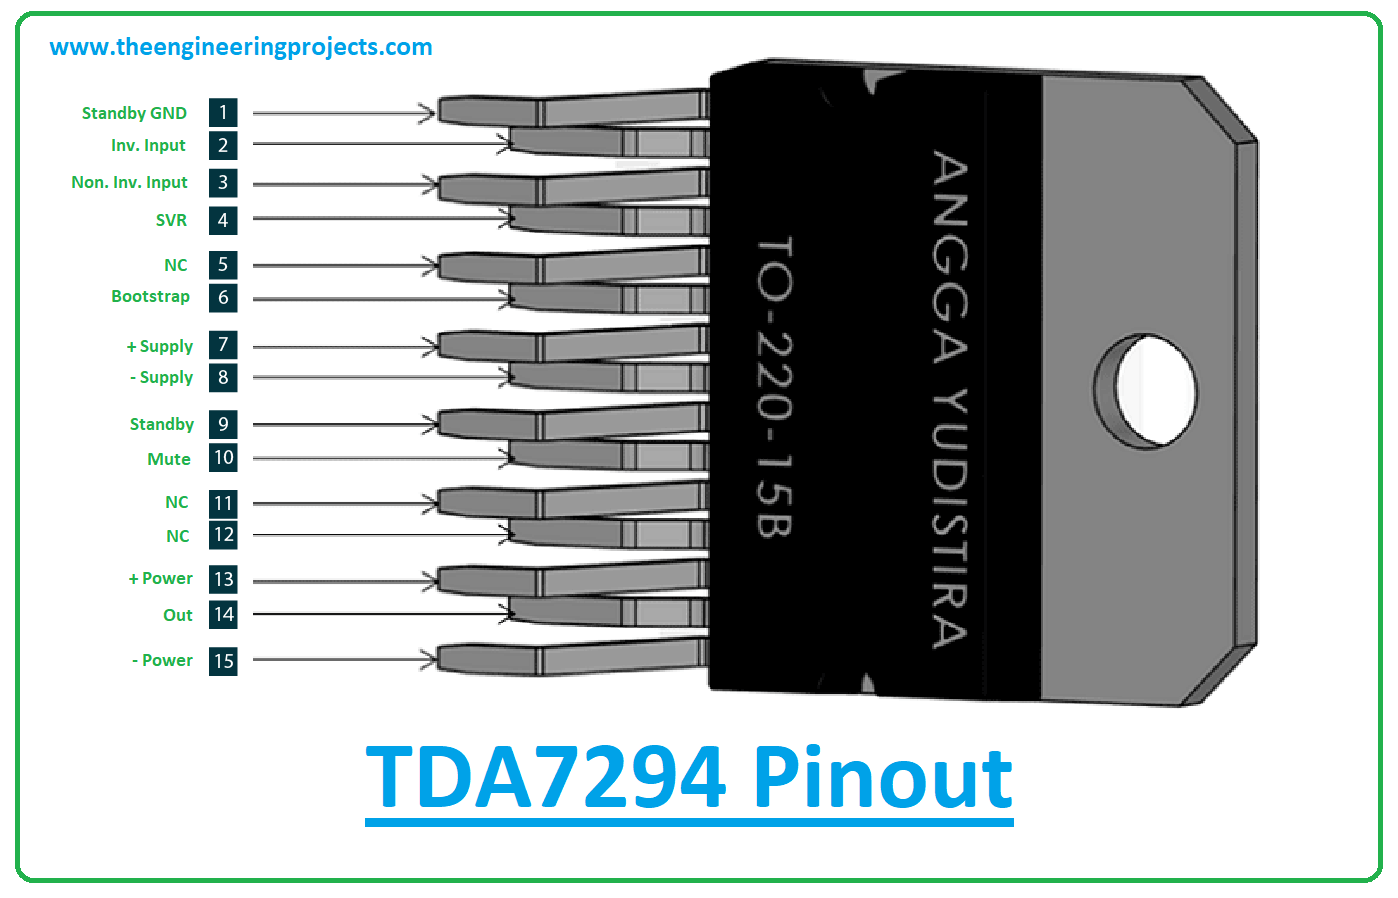 Introduction to tda7294, tda7294 pinout, tda7294 features, tda7294 applications